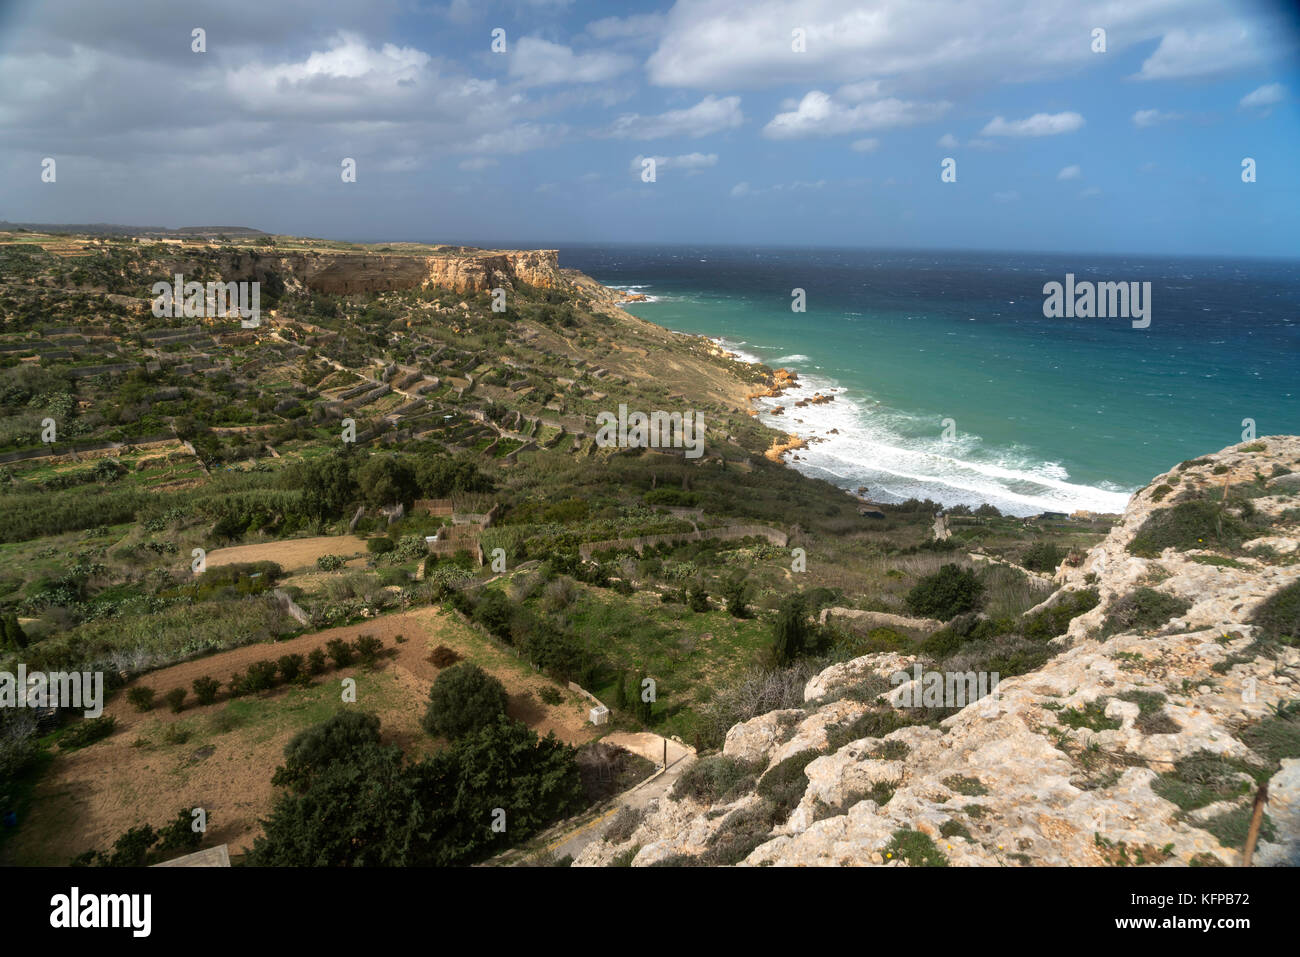 La baie de San Blas im nordosten der Insel Gozo, Malte | Rocky beach de San Blas bay, Gozo, Malte Banque D'Images